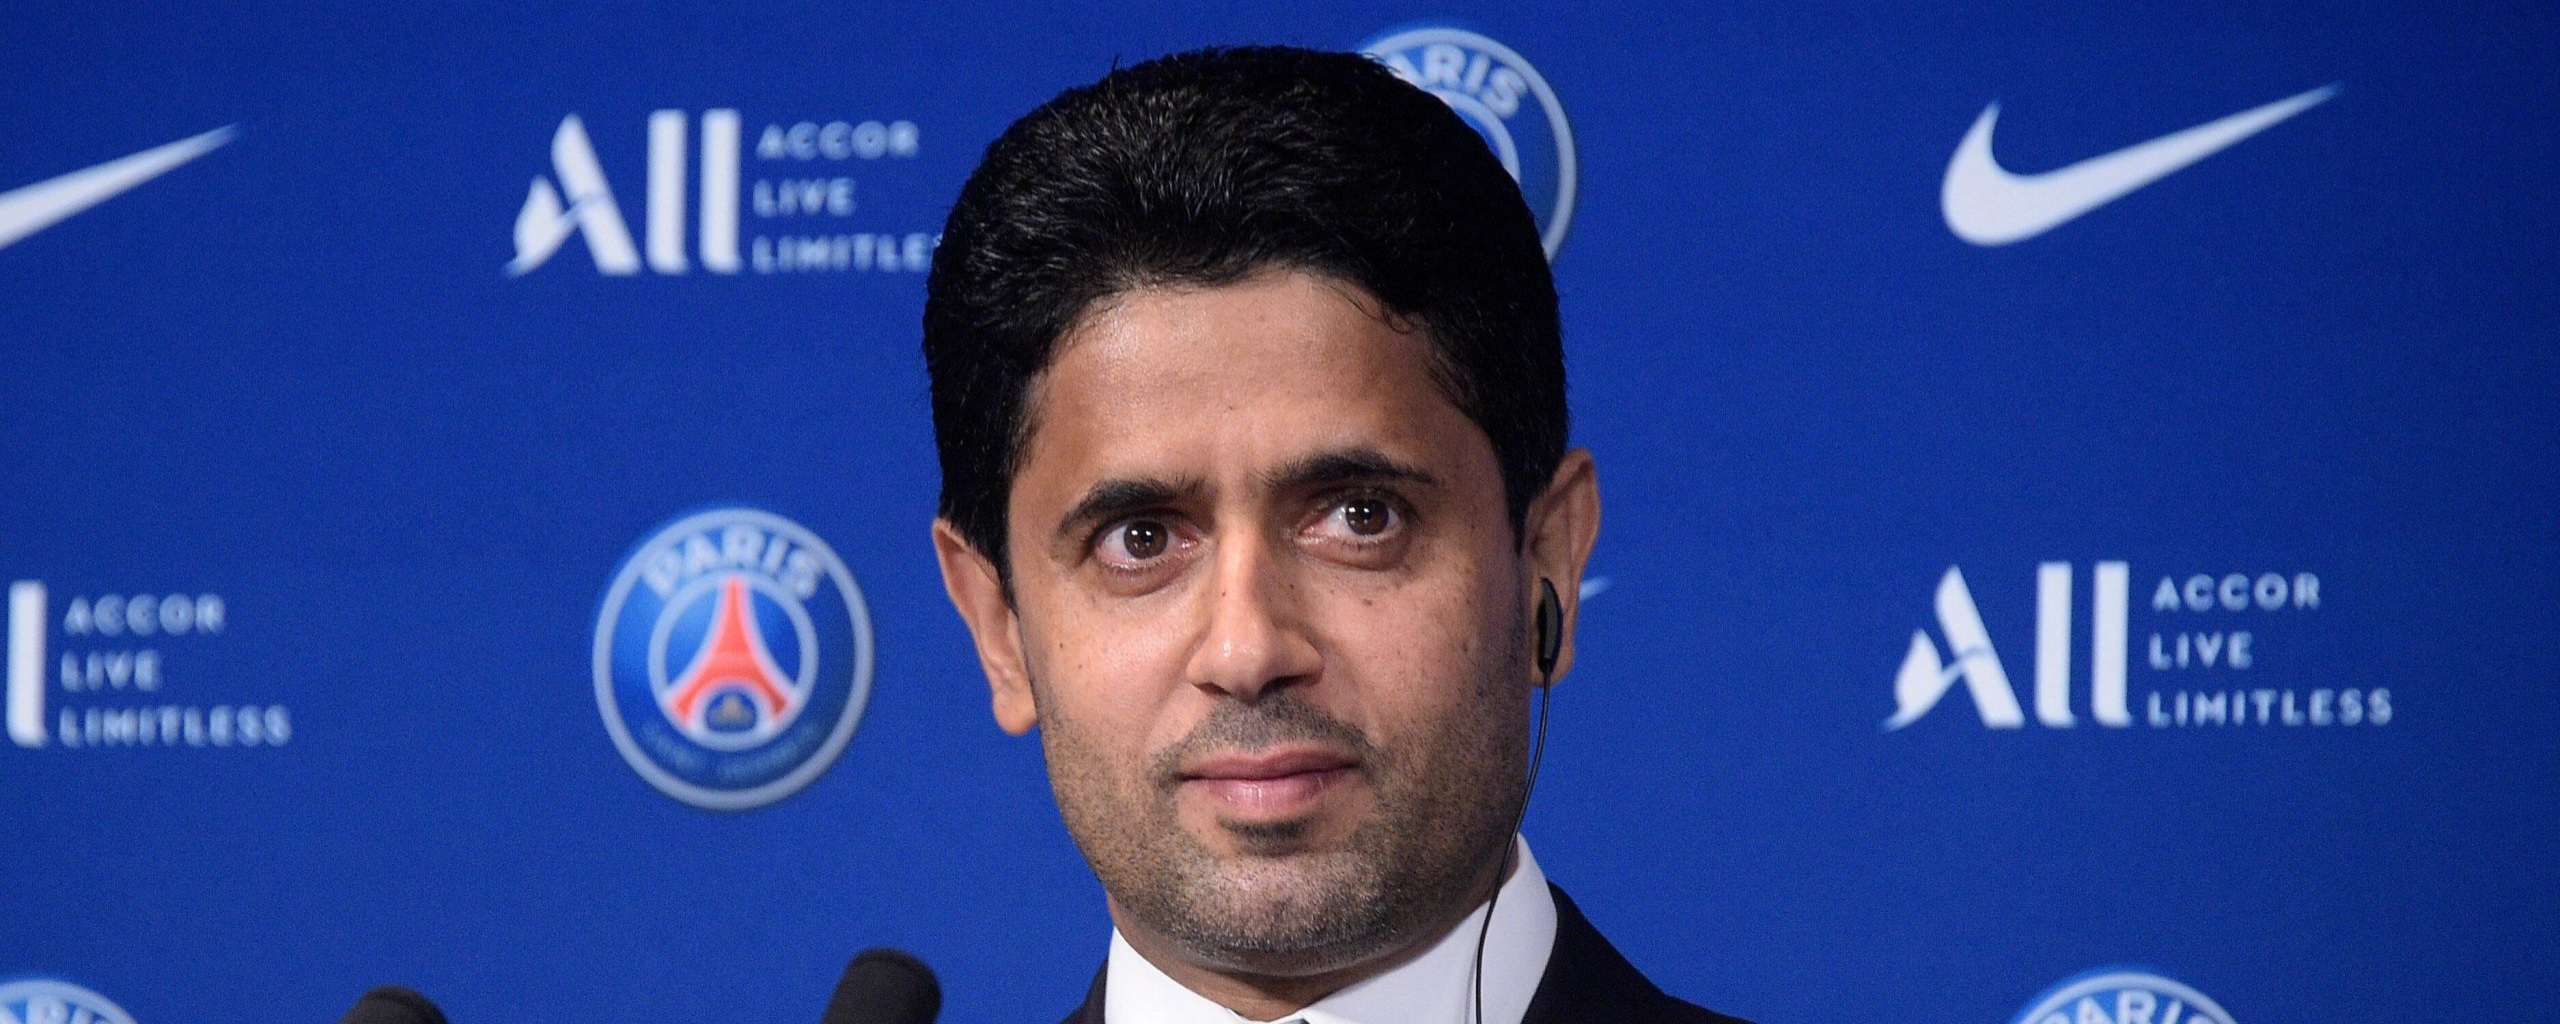 Presiden PSG Terbebas Dari Tuduhan Korupsi Soal Hak Siar FIFA 